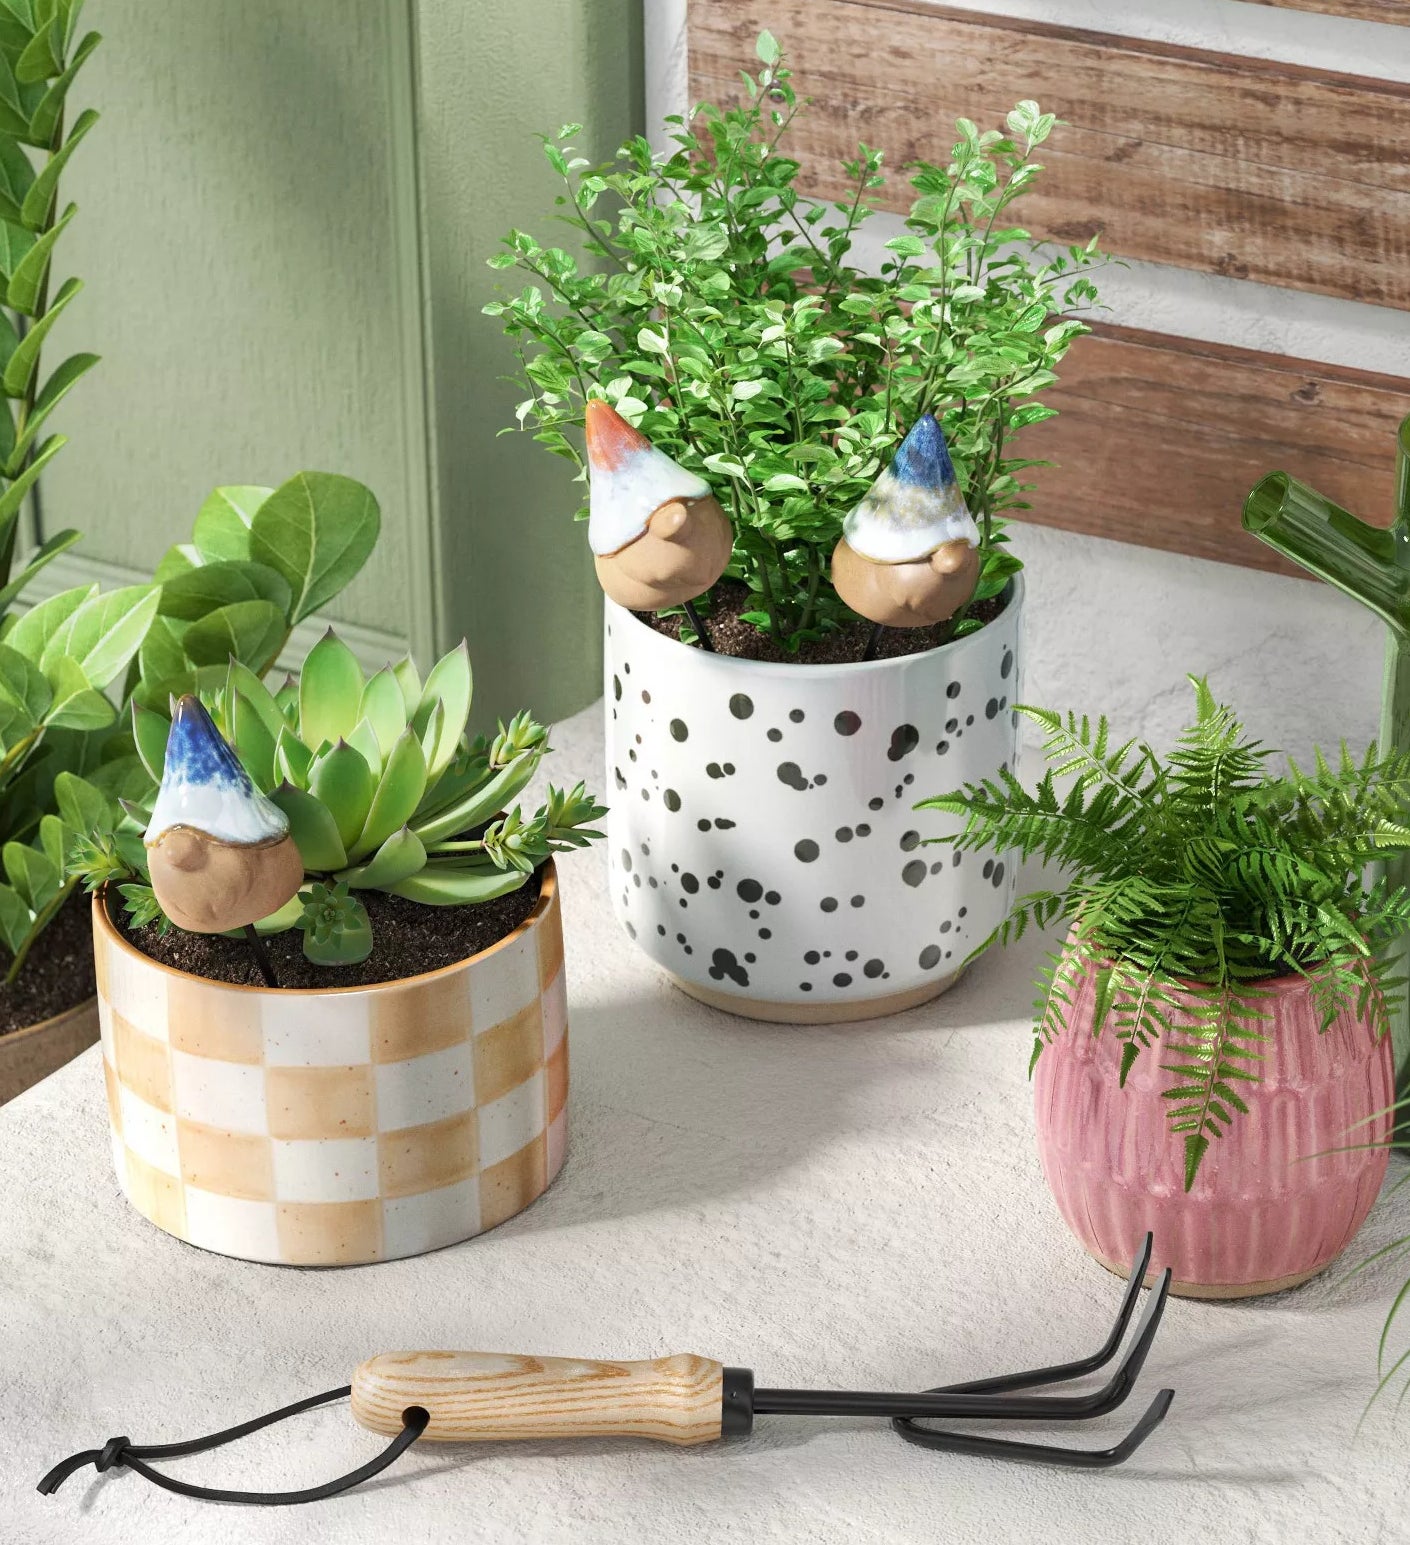 Three decorative gnome planters in plant pots